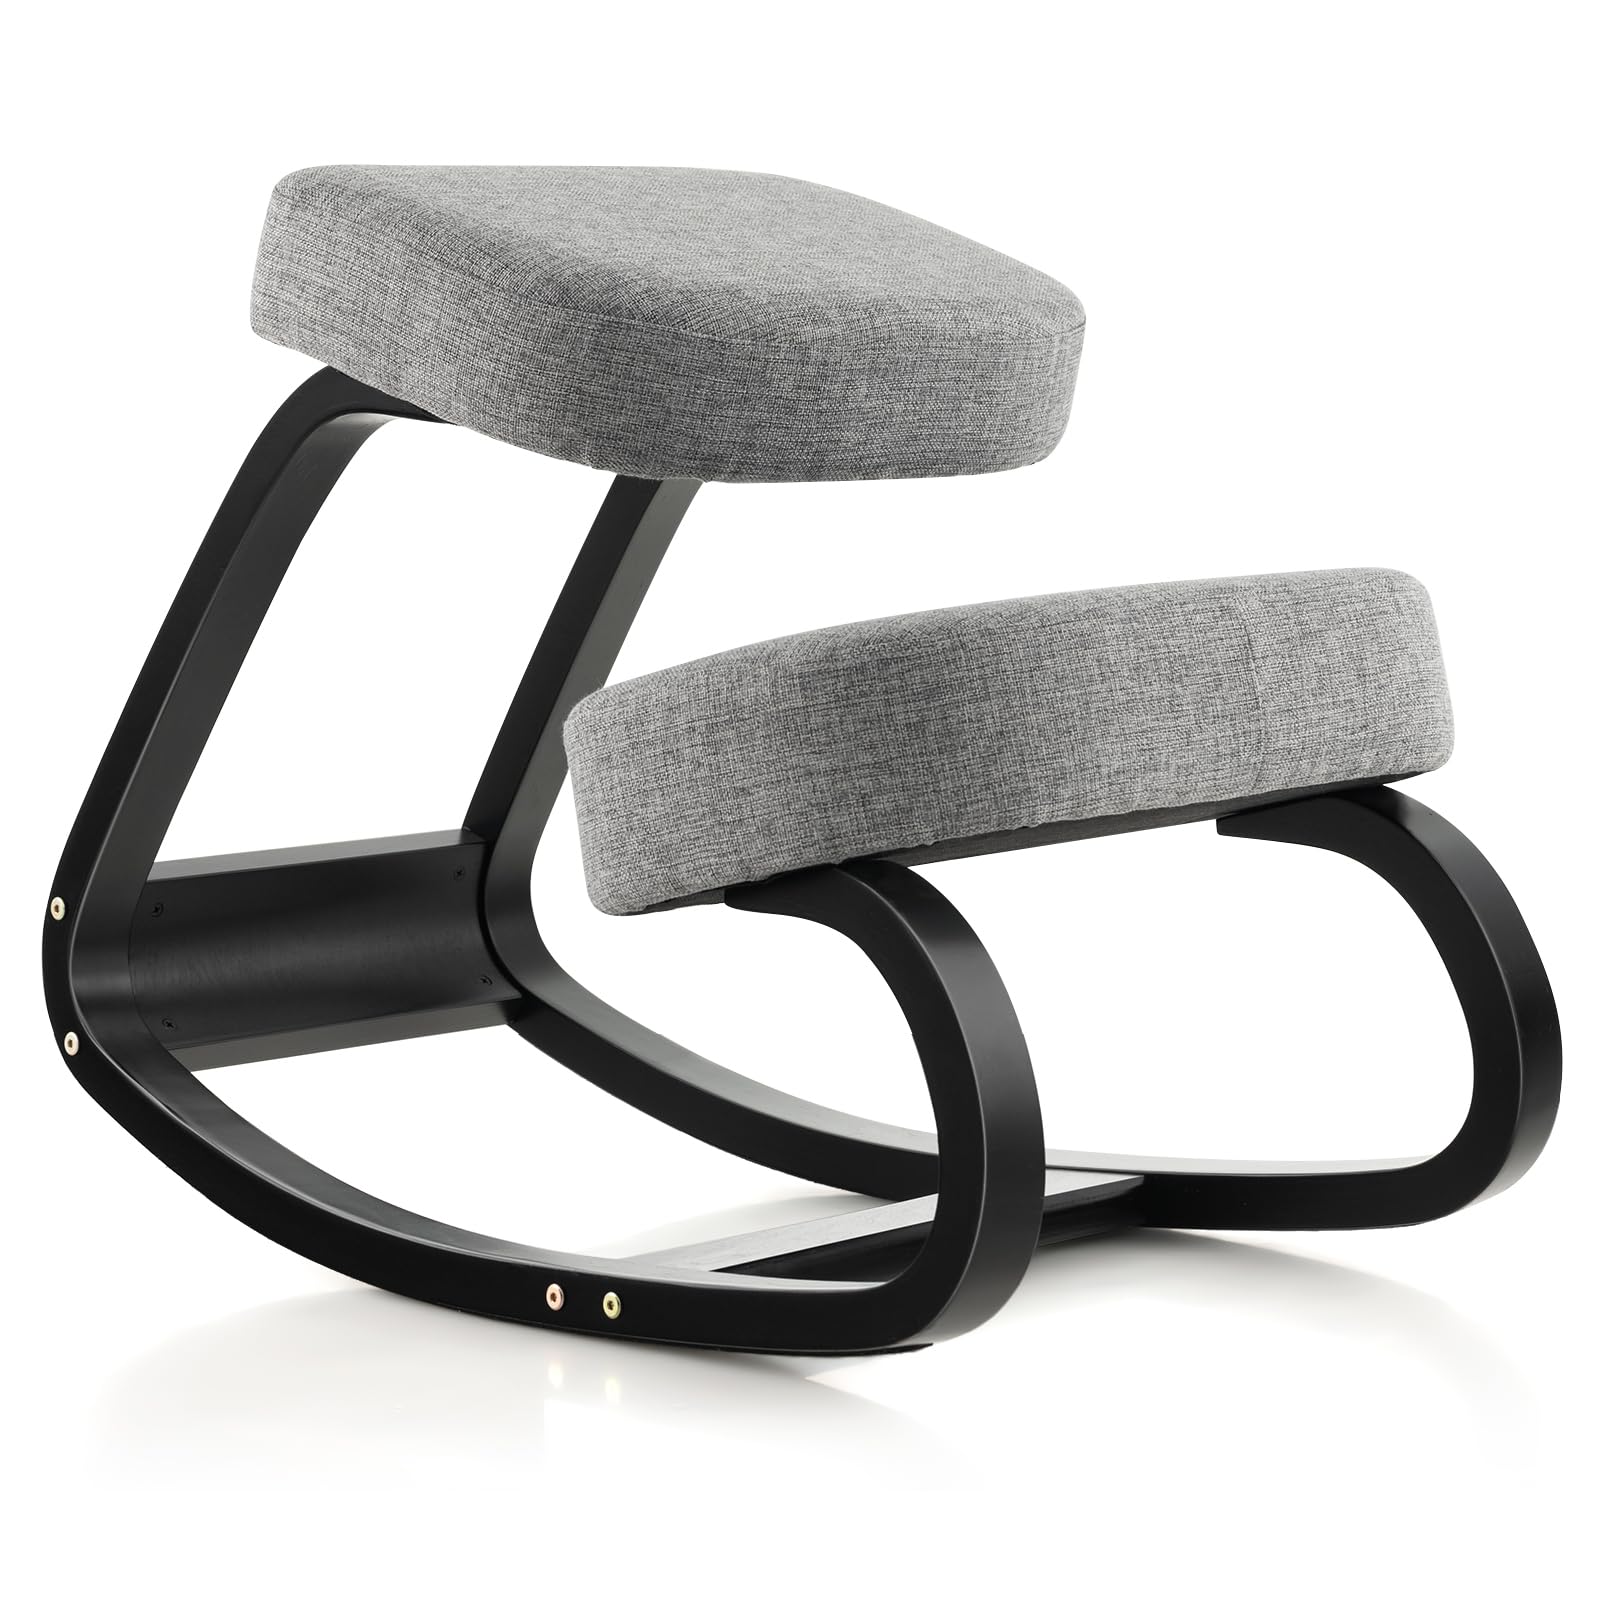 Giantex Kneeling Chair, Wood Posture Chair